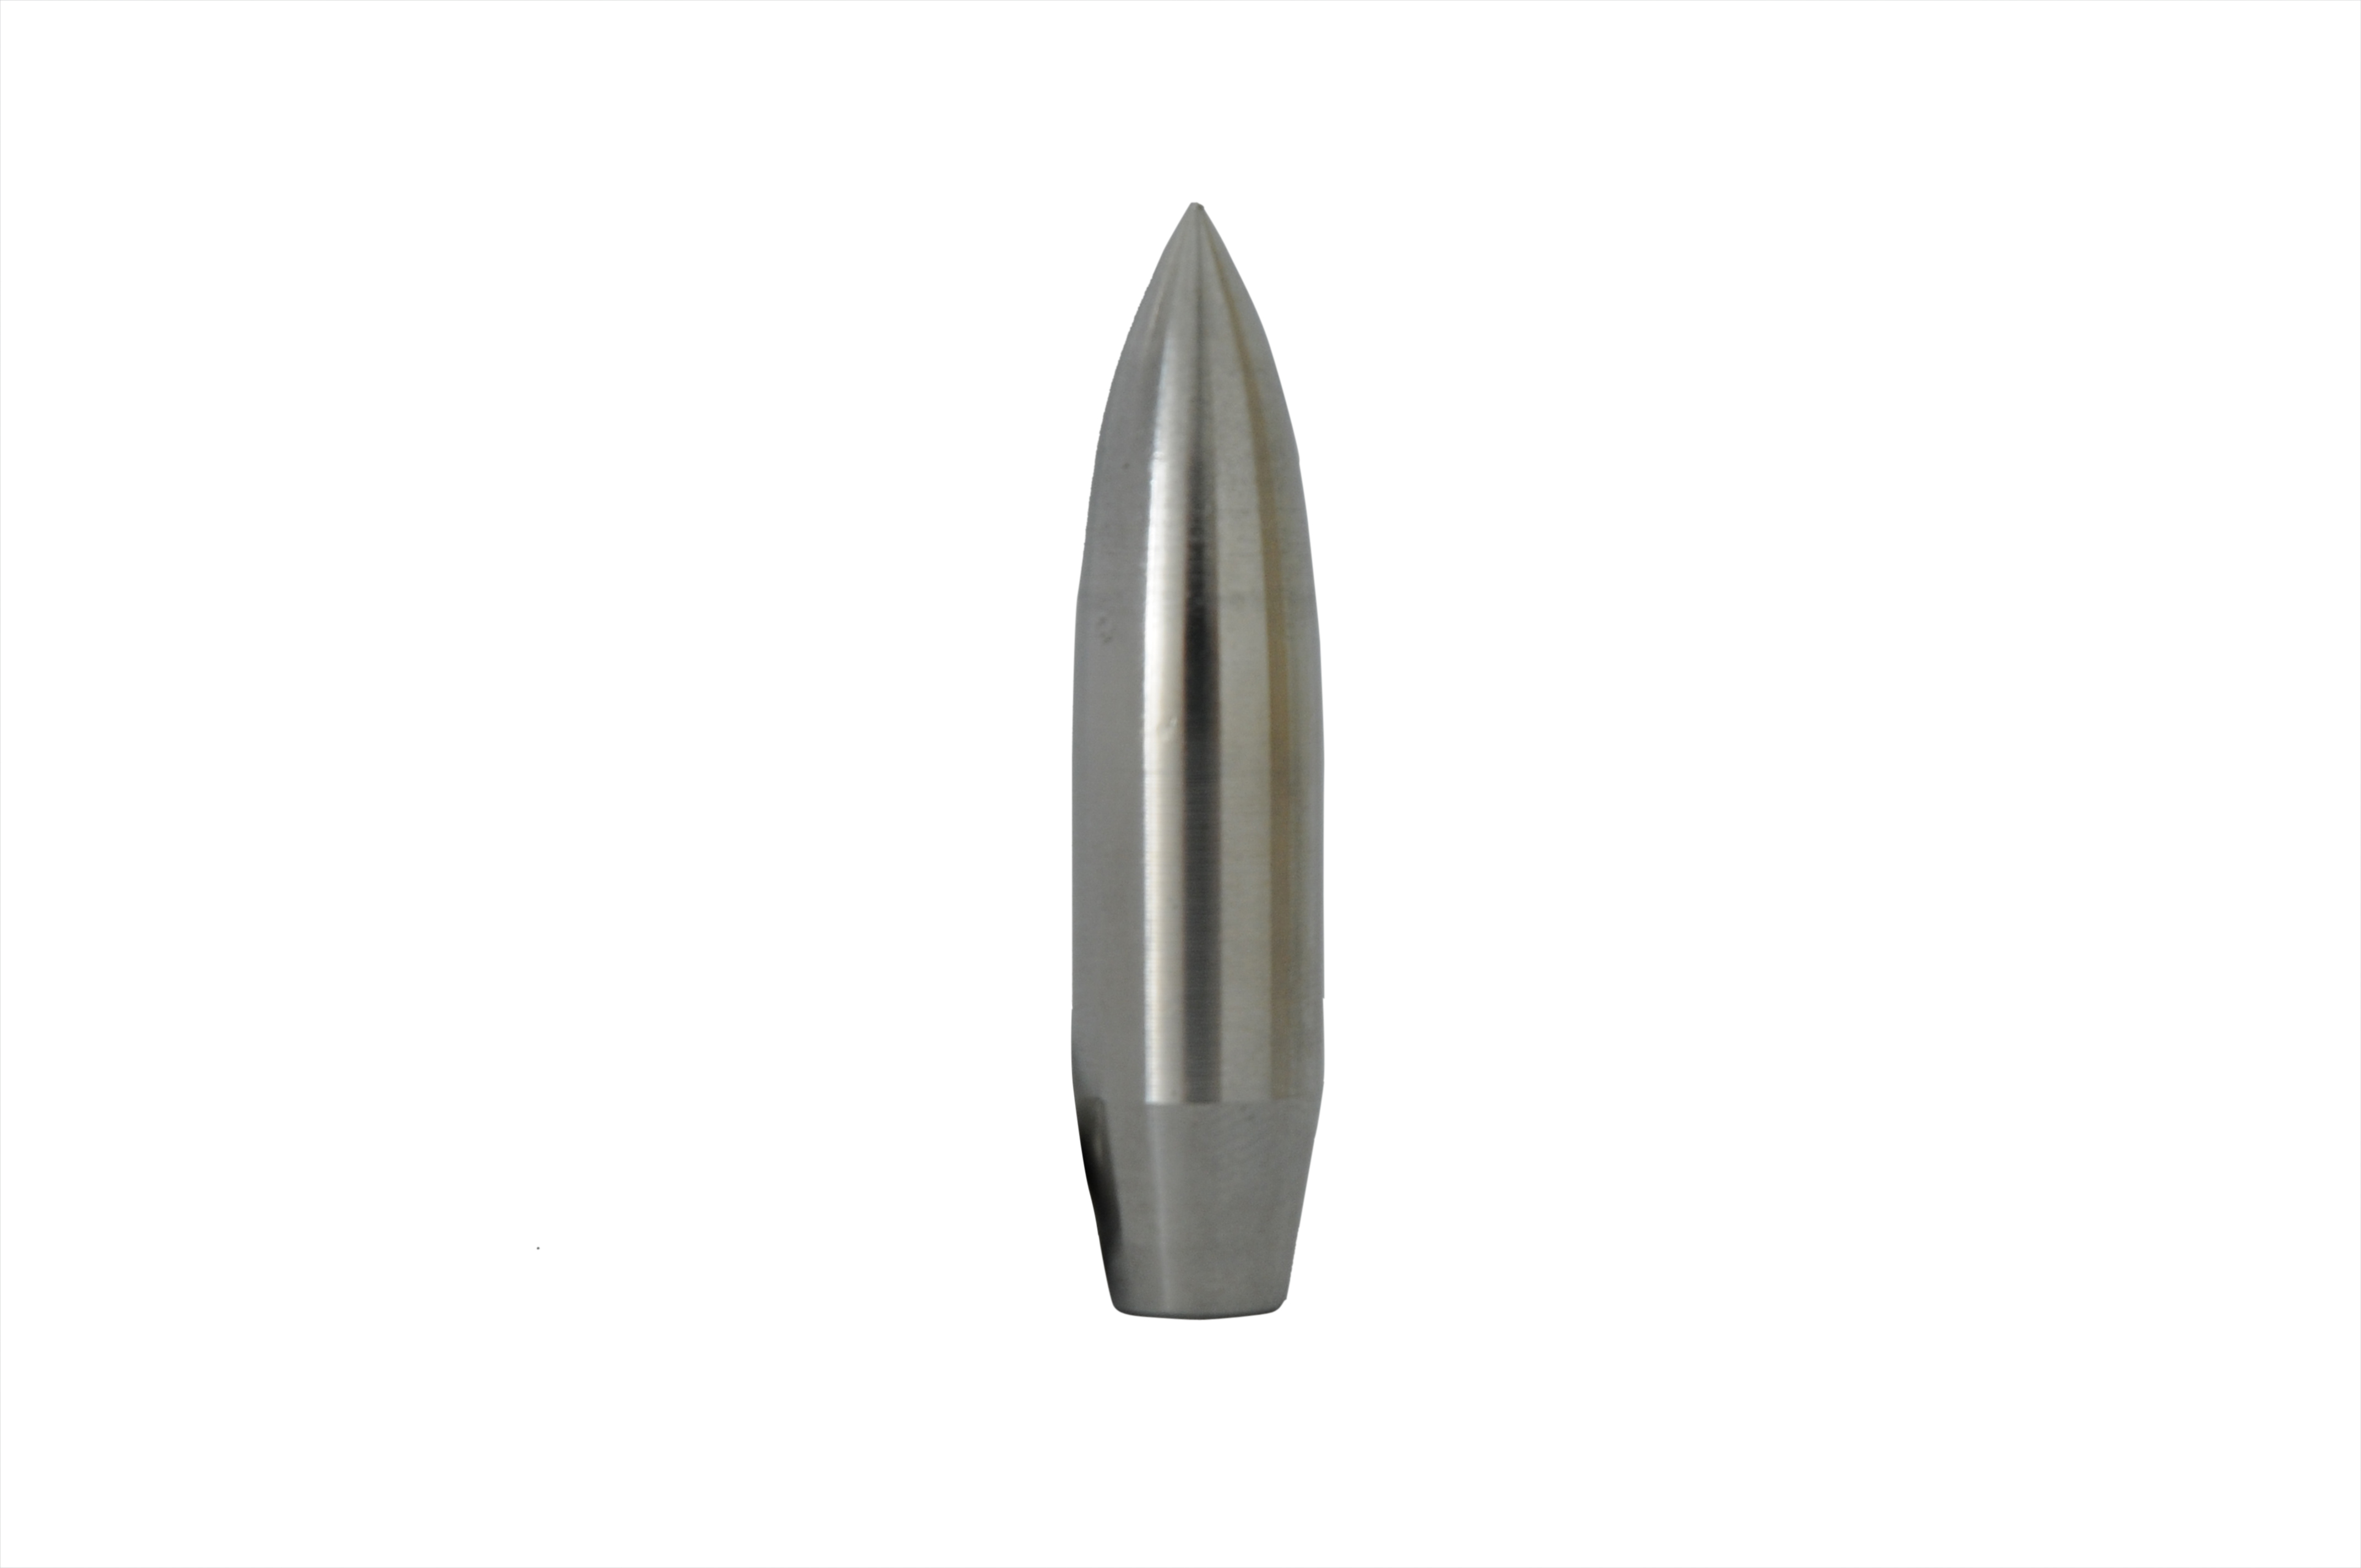 12.7mm M8 API Steel Core